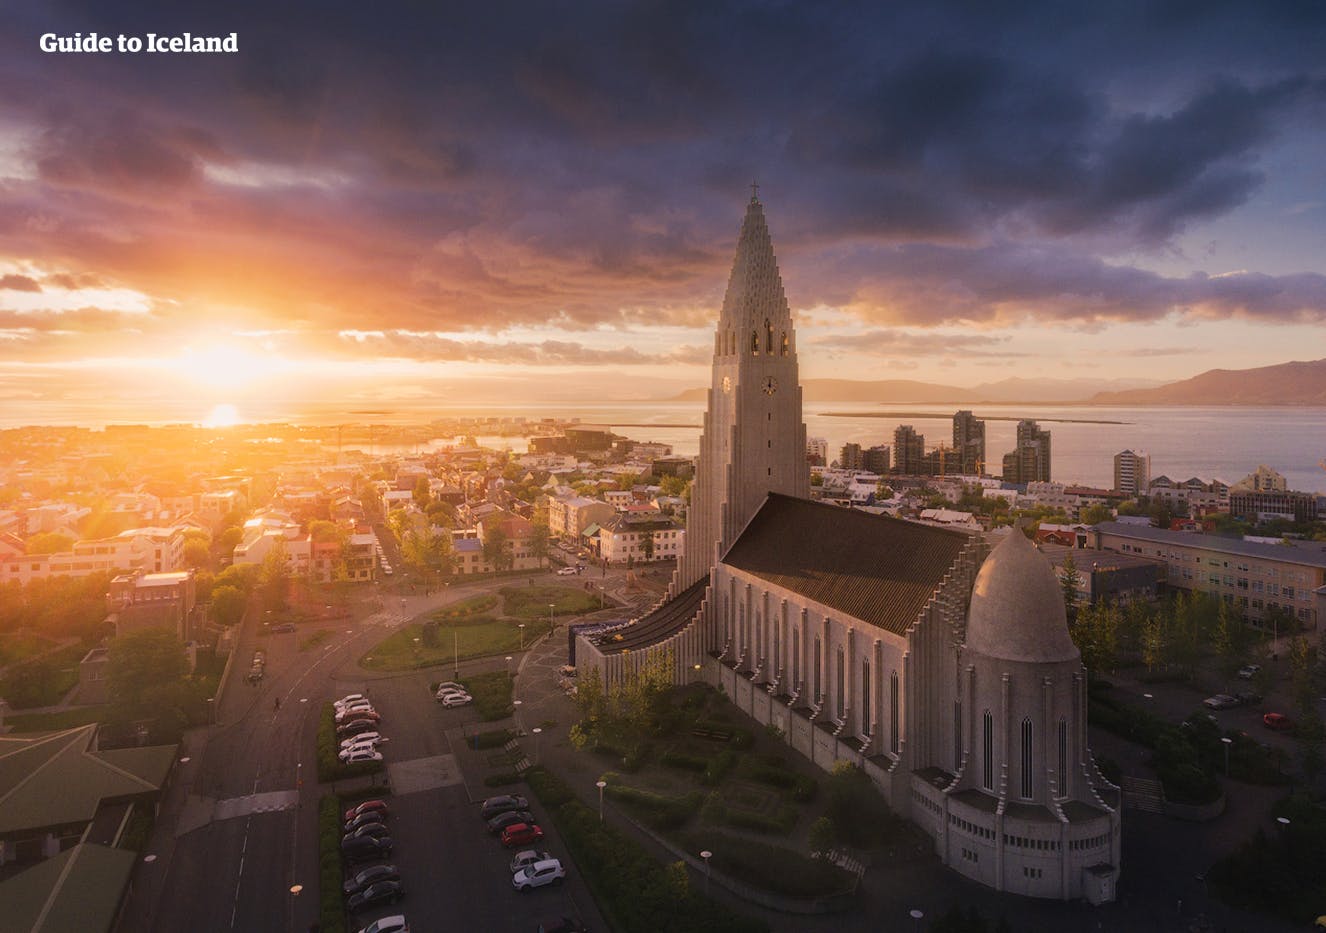 Hallgrímskirkja to tylko jeden z wielu zabytków kultury w Reykjaviku.